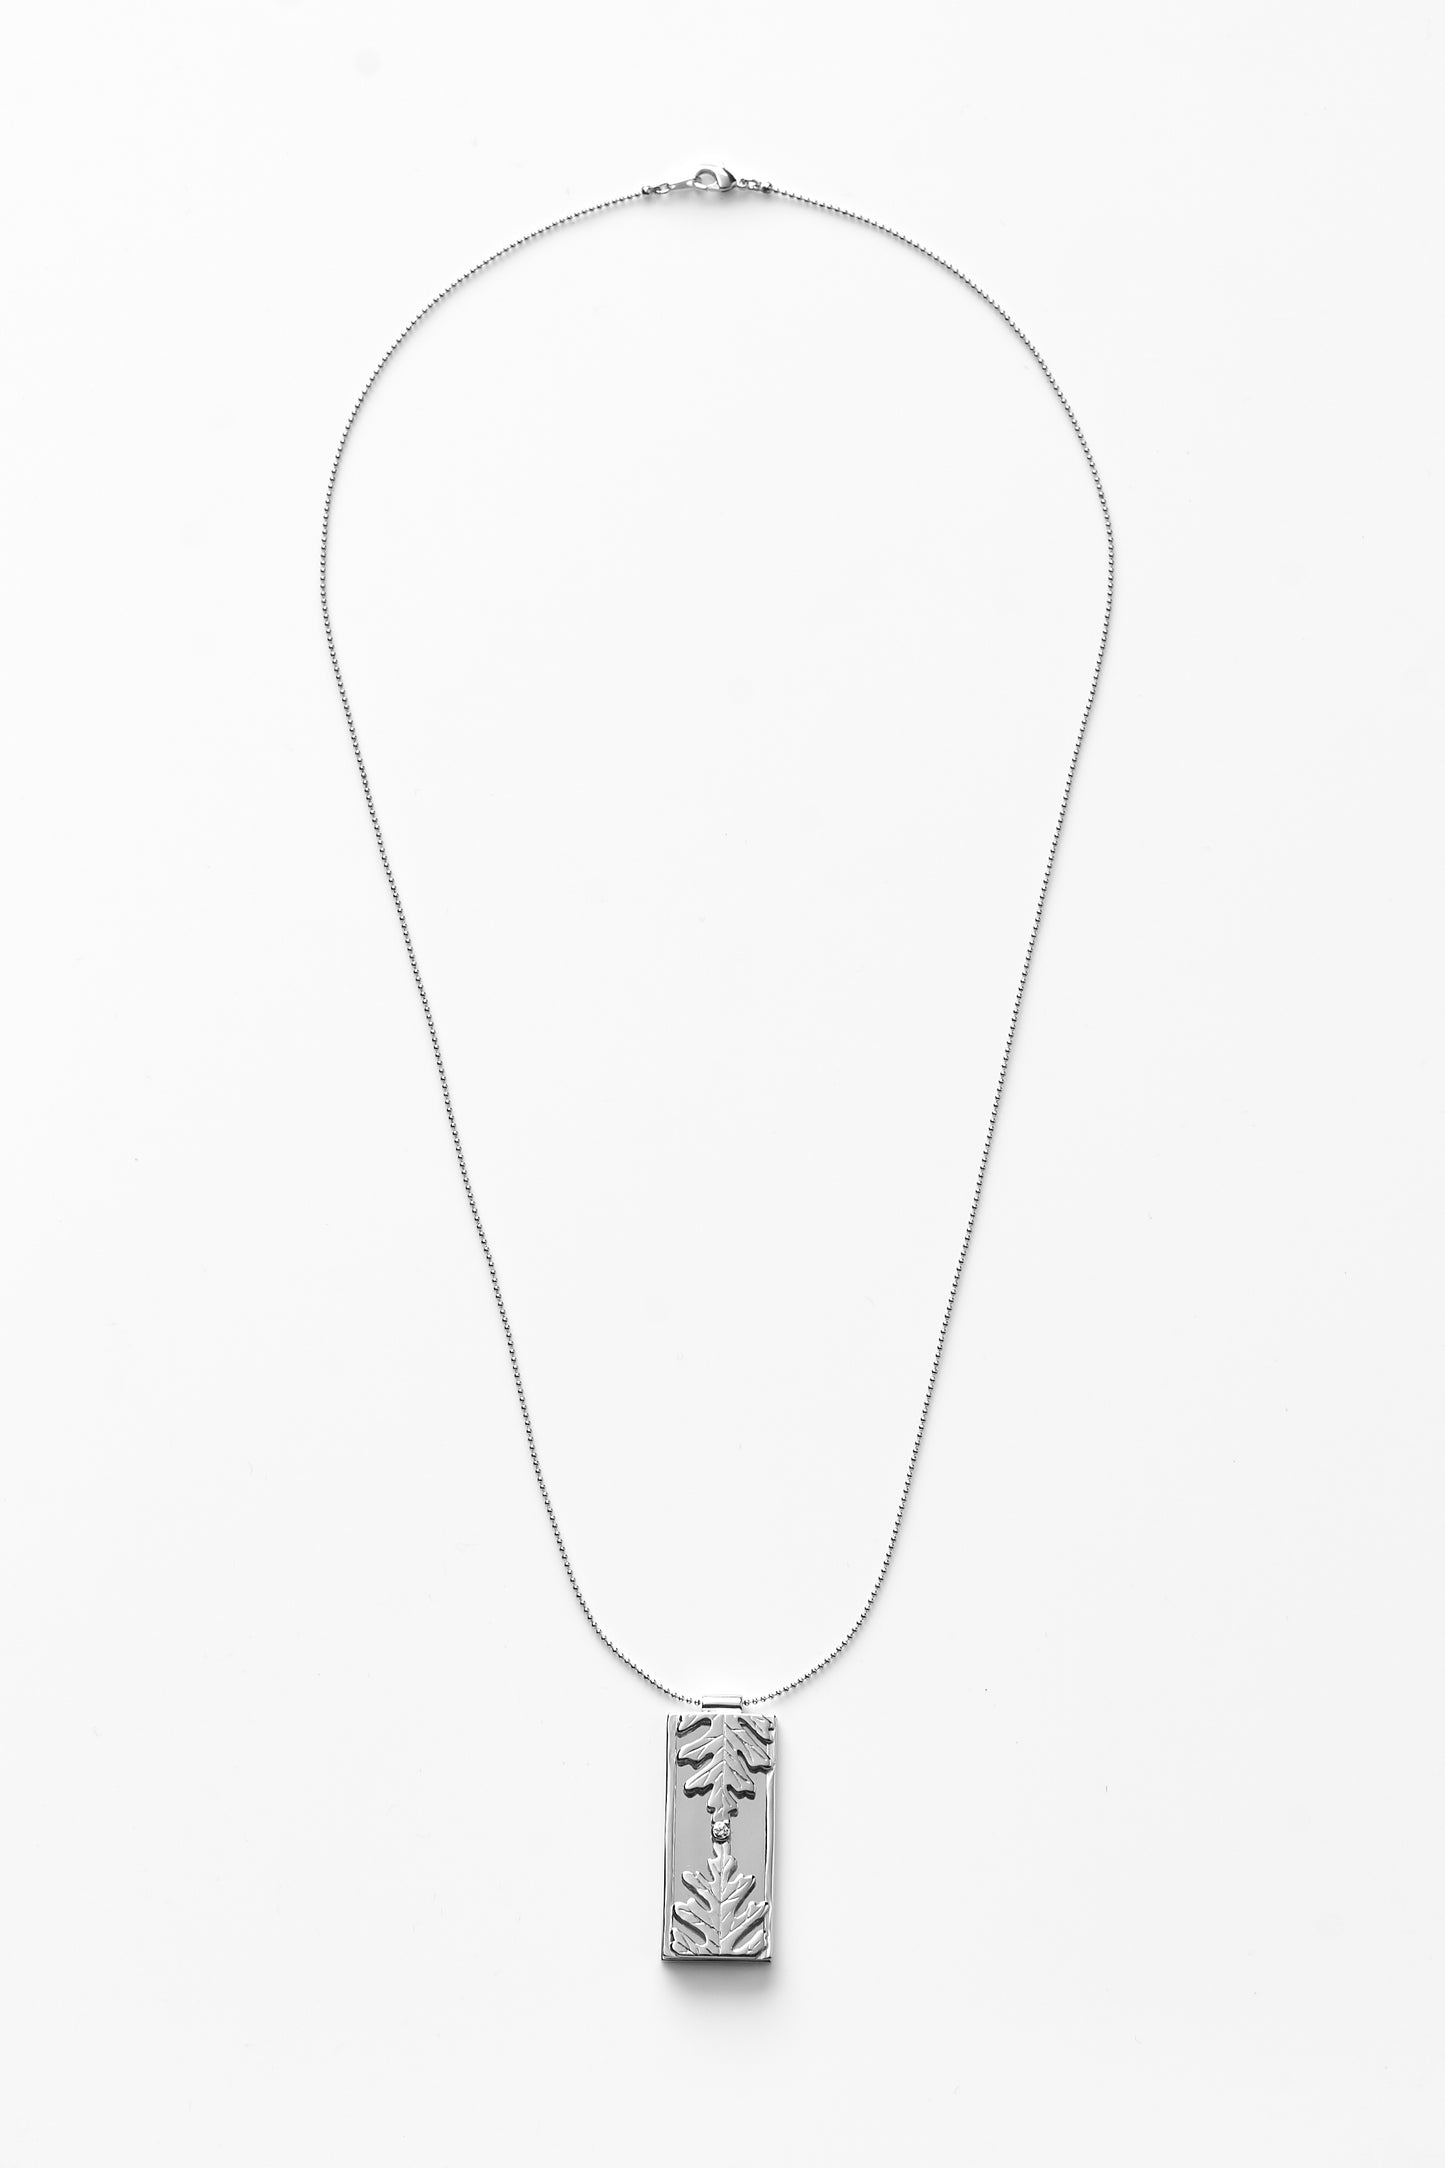 【綻放】框中風景-銀葉菊項鍊/預購訂製款/925純銀/黃銅鍍20K金 Dusty Miller Necklace